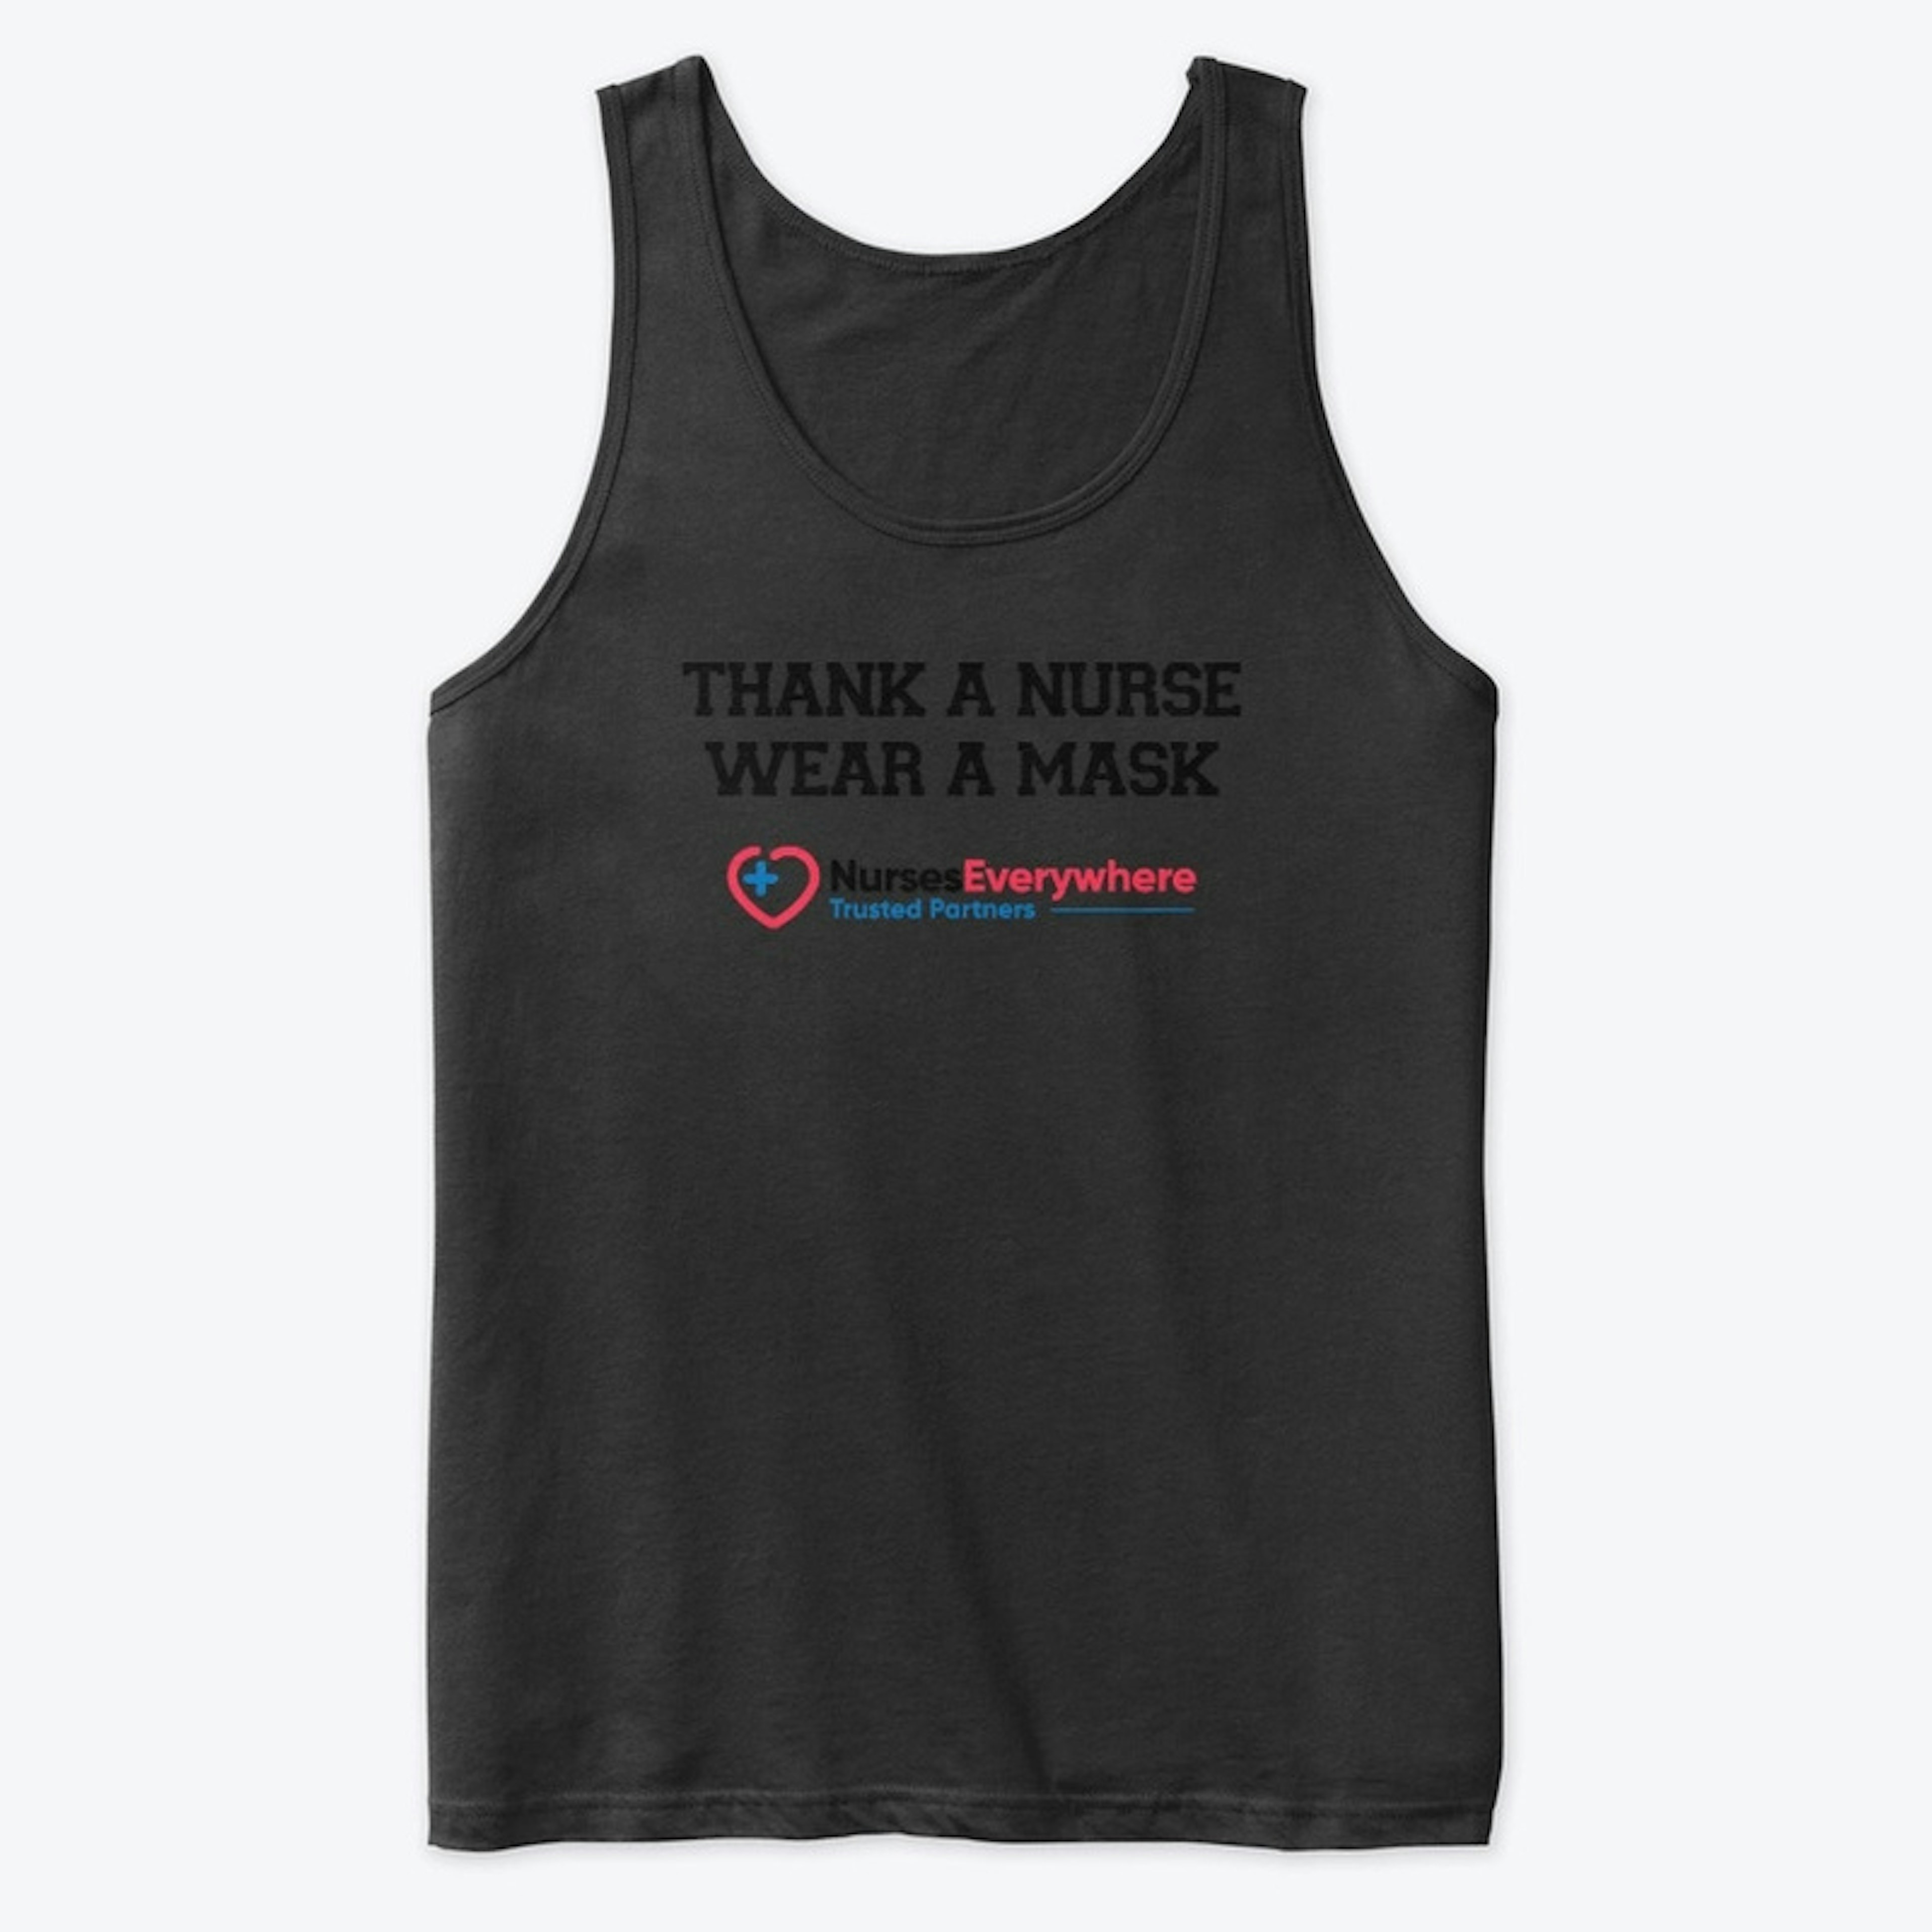 Thank A Nurse T-shirt